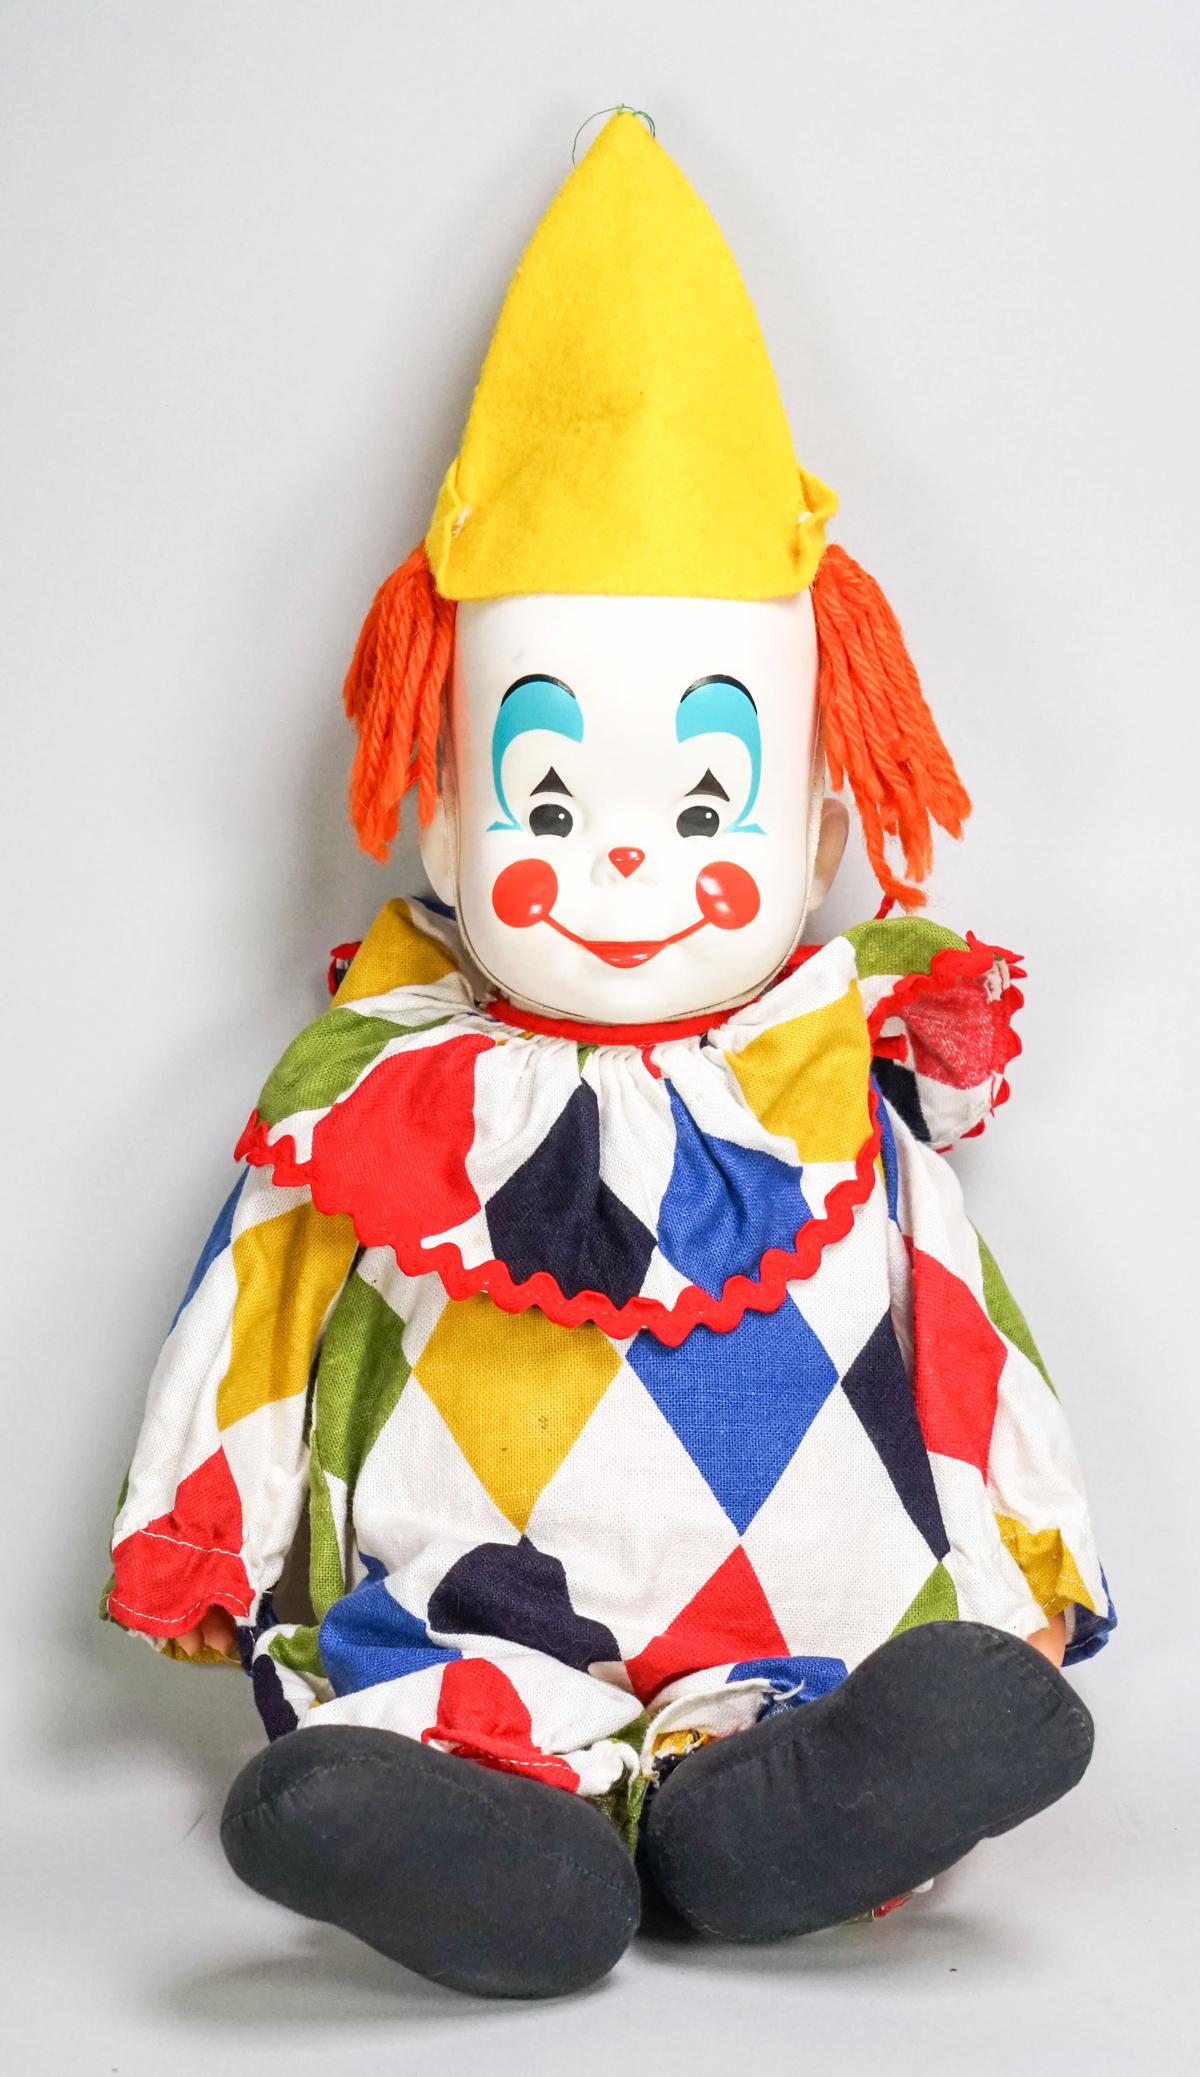 1965 Cutie Patootie Clown Doll By Mattel